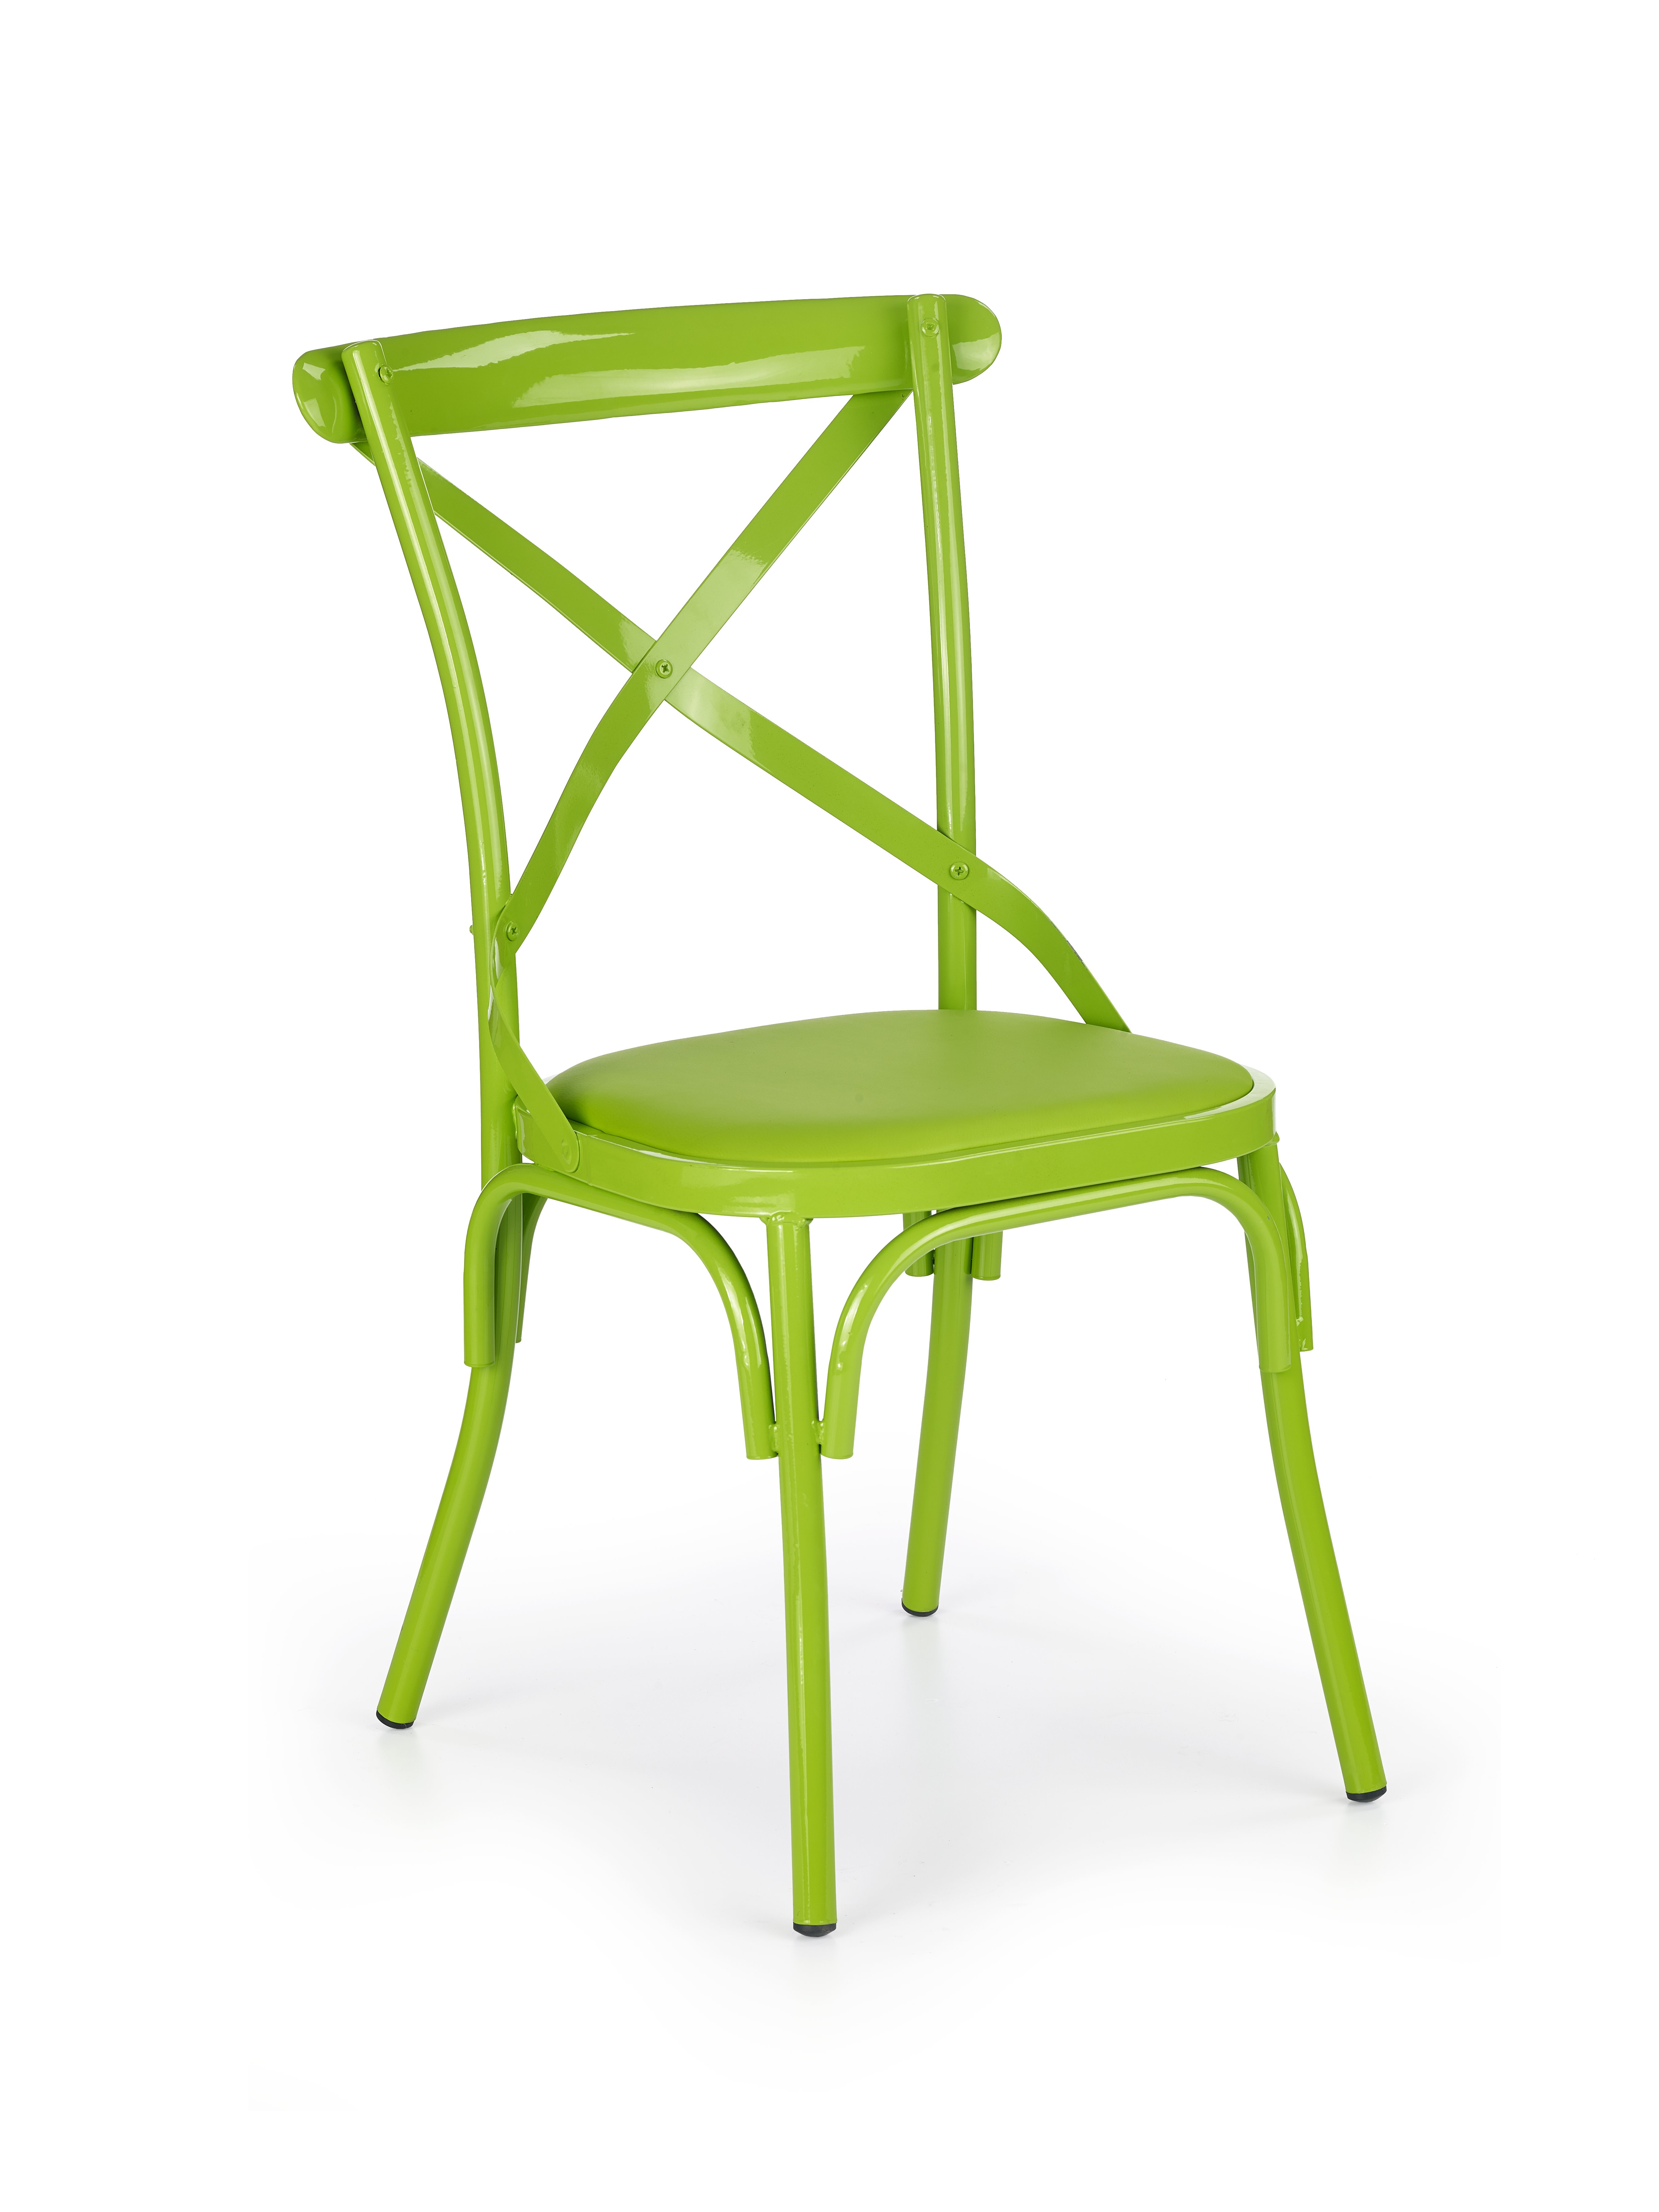 Купить кухонные стулья в минске. Стул Halmar k216, красный. Стул Halmar зеленый. Стул кухонный Halmar. Стул Jagger Jewel Green.